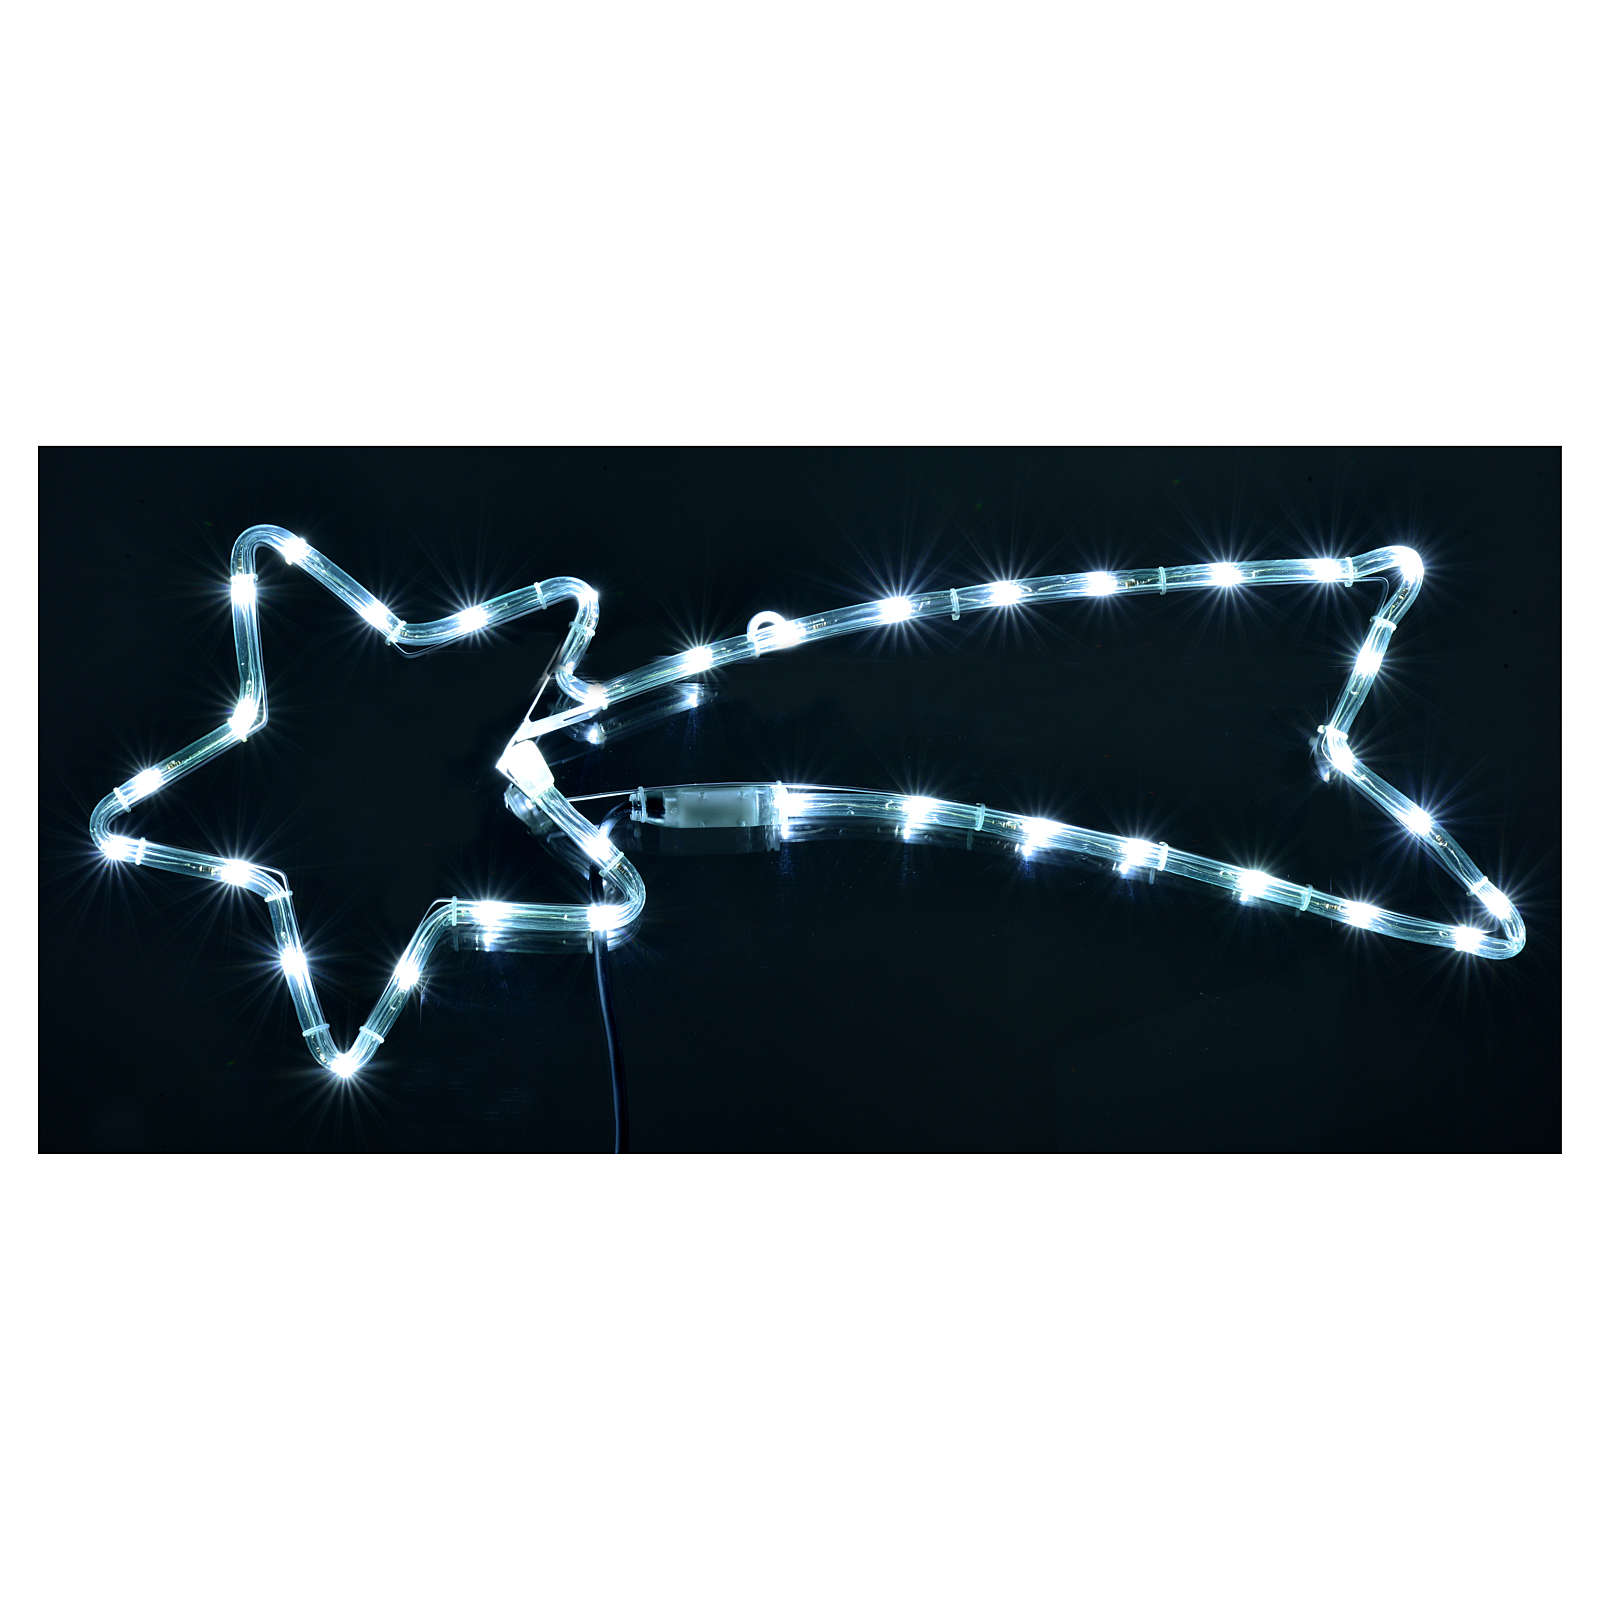 Stella Cometa Per Albero Di Natale.Stella Cometa Luminosa Led Bianco Ghiaccio Per Esterno Vendita Online Su Holyart